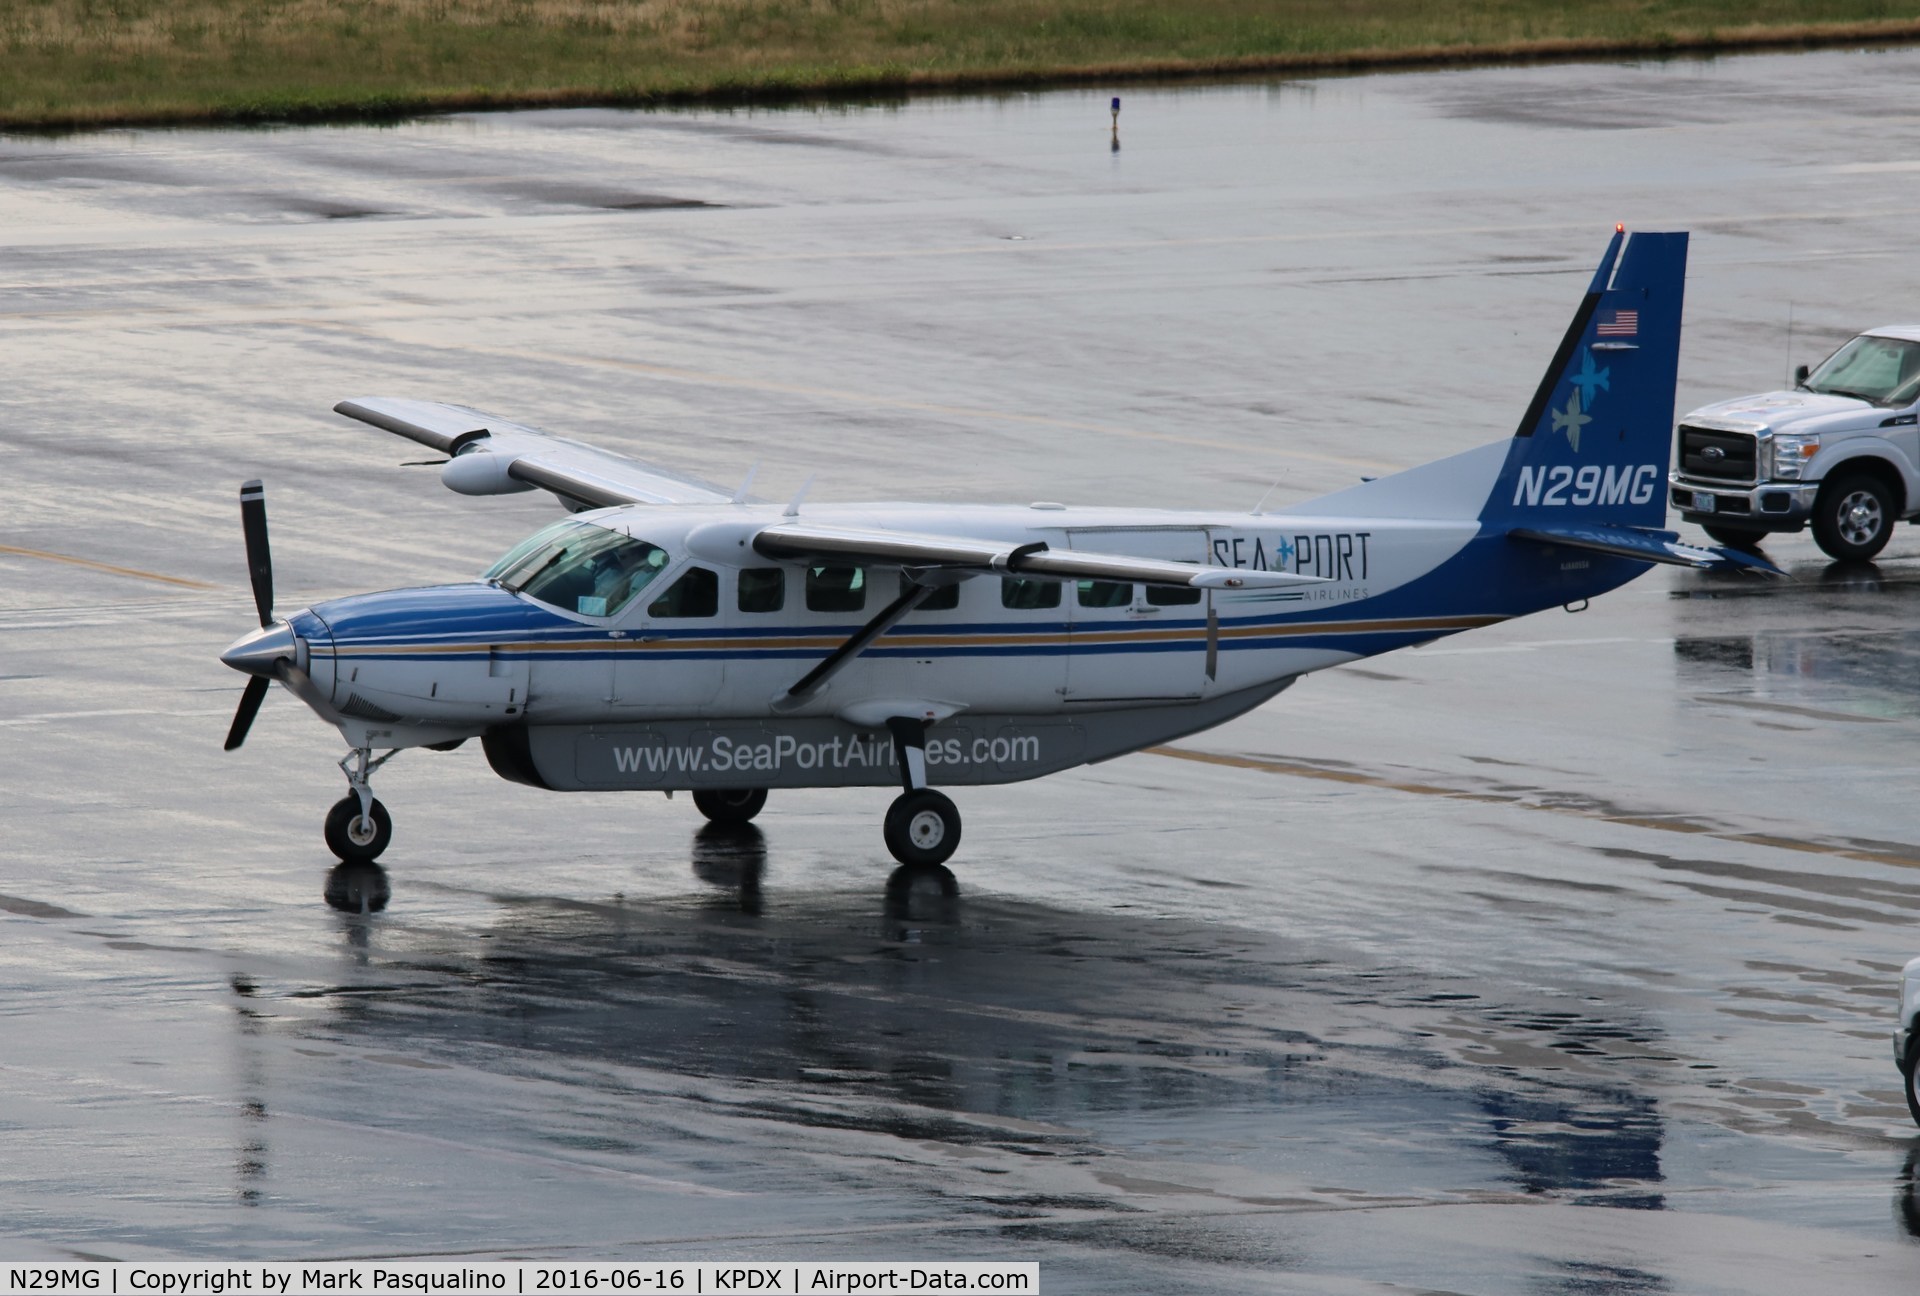 N29MG, 2000 Cessna 208B C/N 208B0812, Cessna 208B